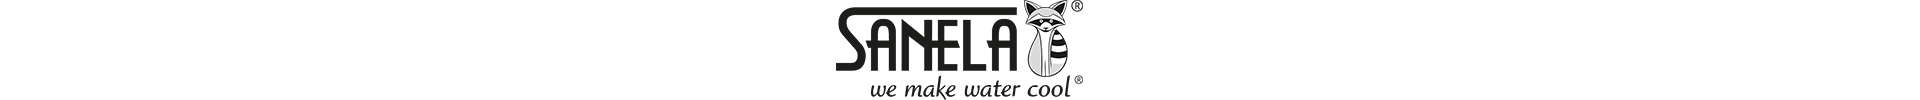 Sanitaerbedarf Onlineshop von SANELA - Ihr Fachhandel für Sanitärtechnik